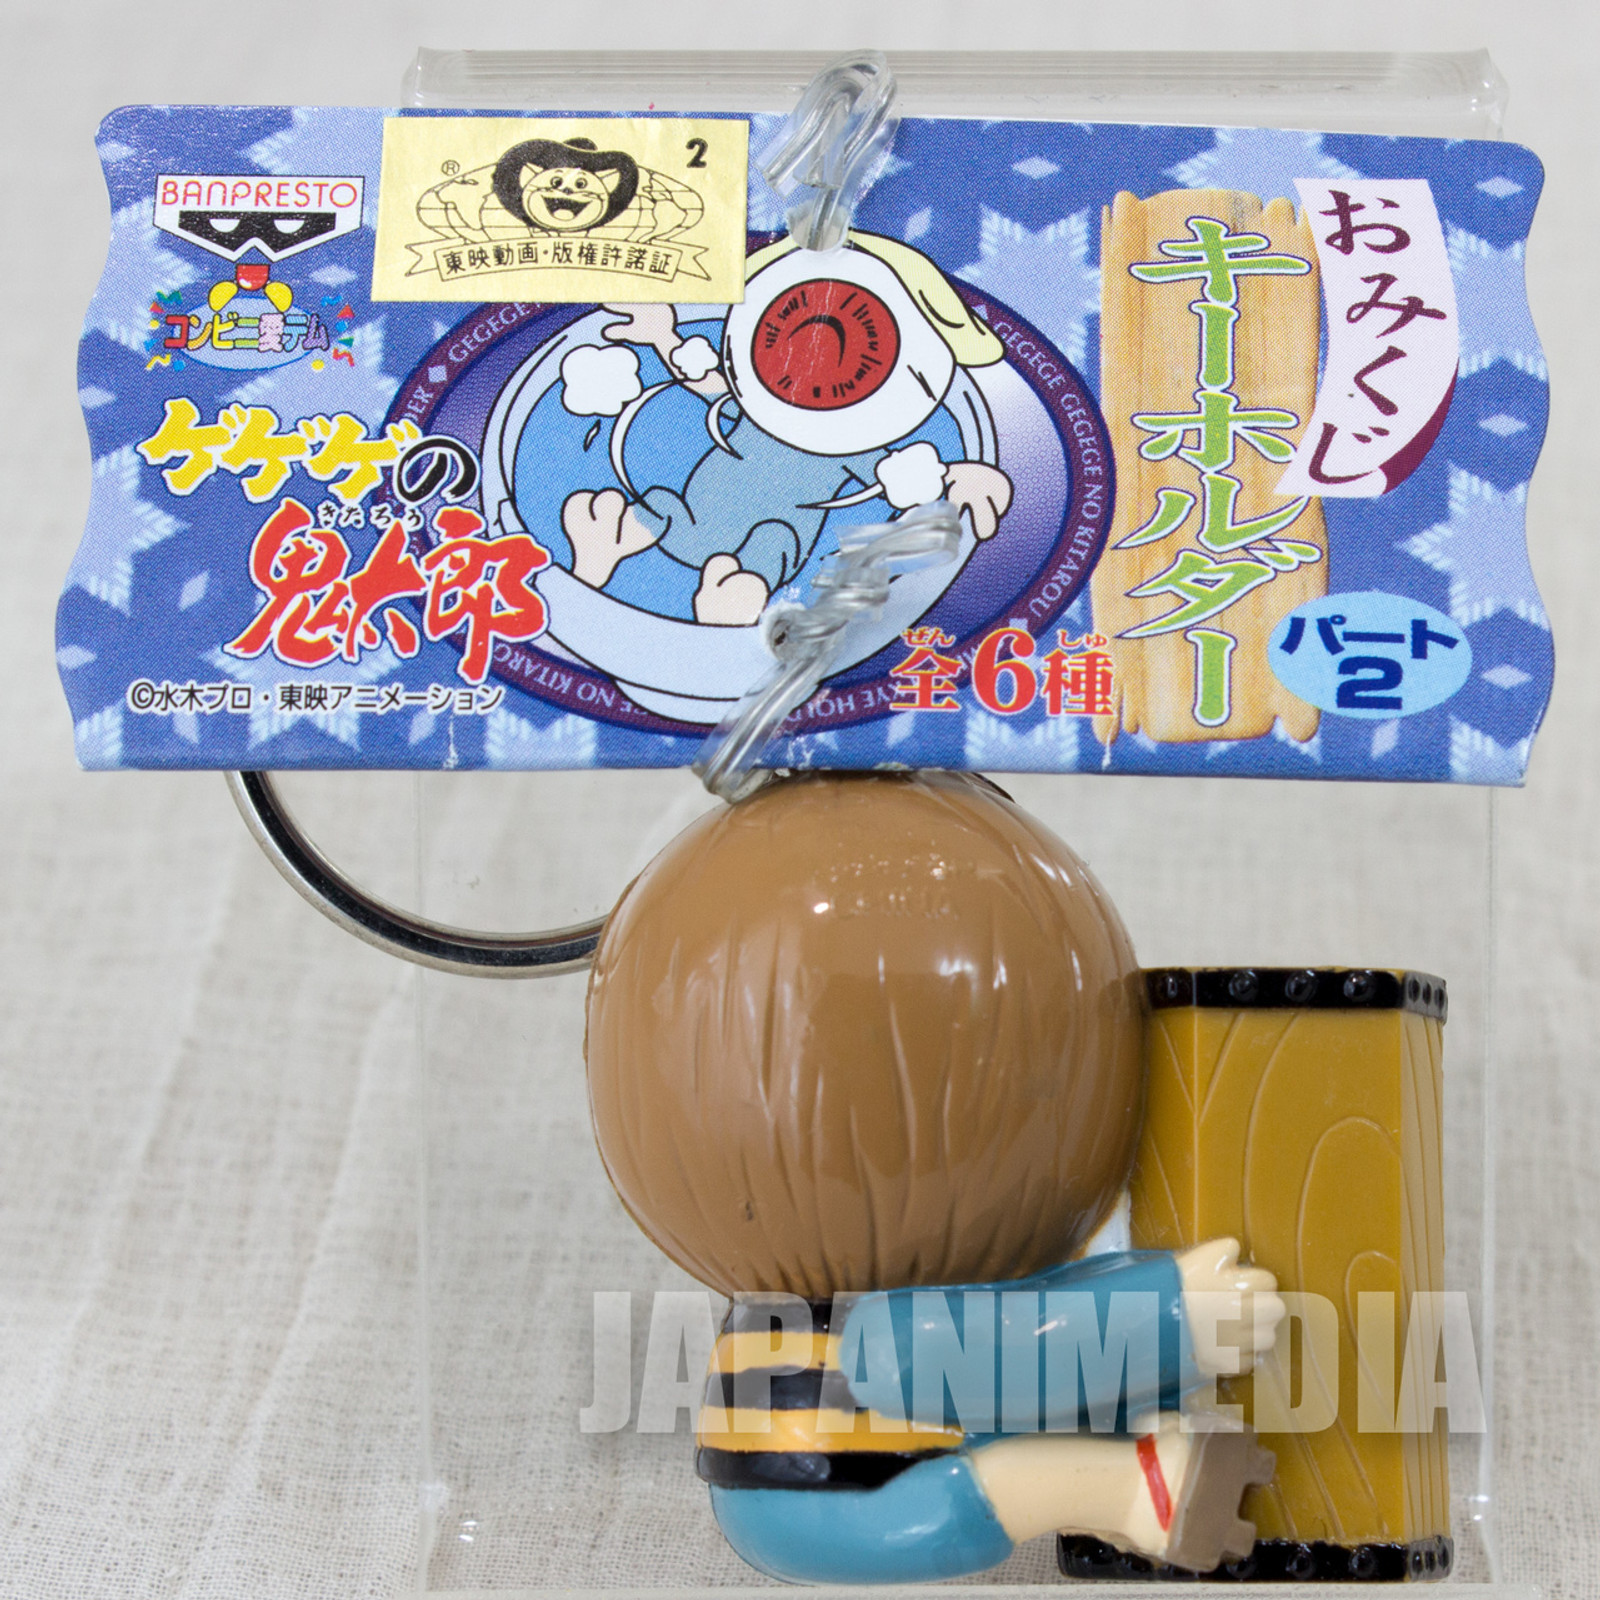 Gegege no Kitaro Omikuji Fortune Slip Figure Keychain JAPAN ANIME MANGA